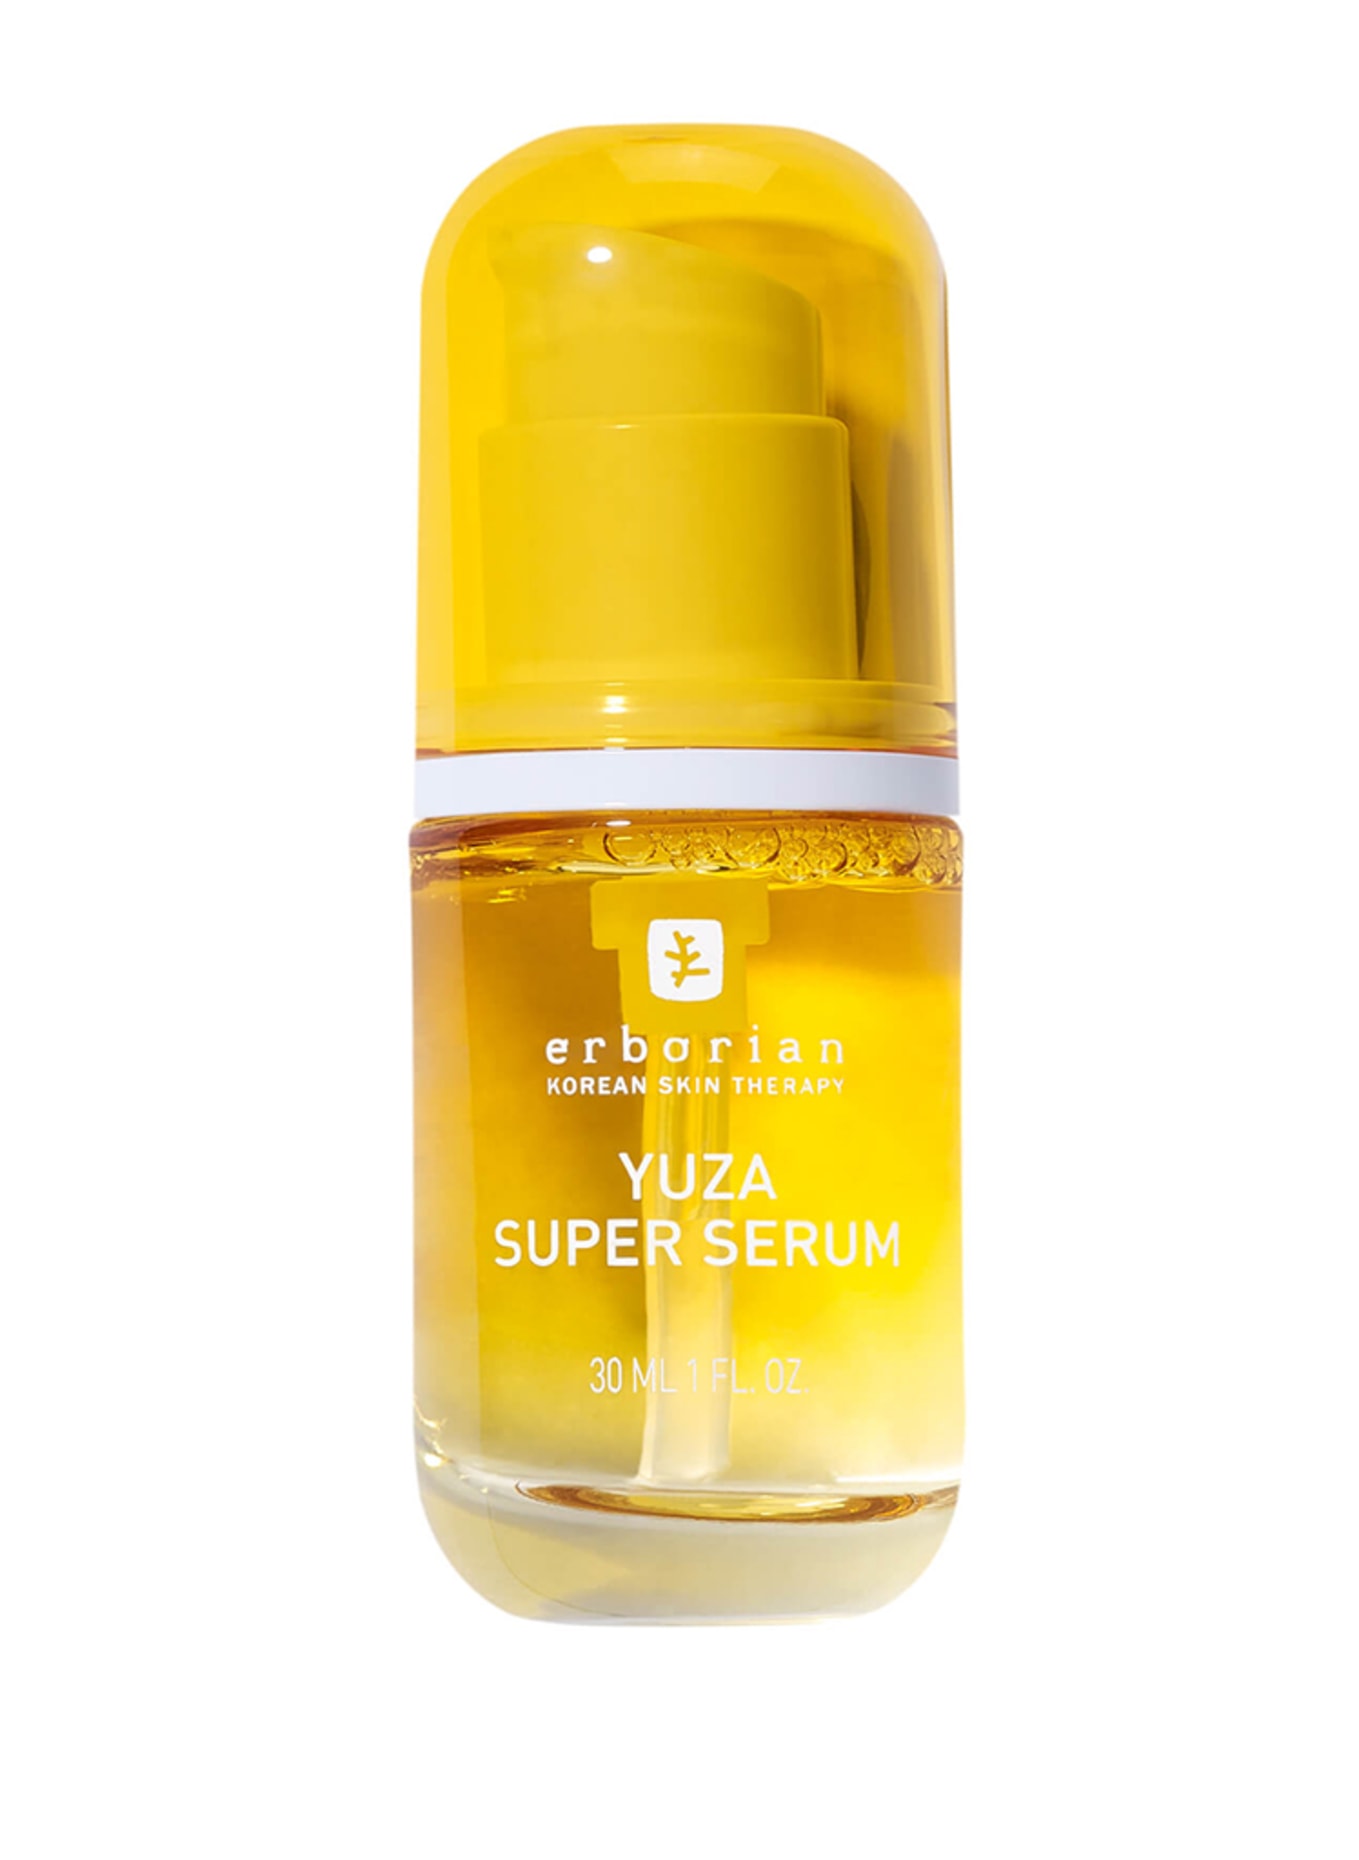 erborian YUZA SUPER SERUM (Obrazek 1)